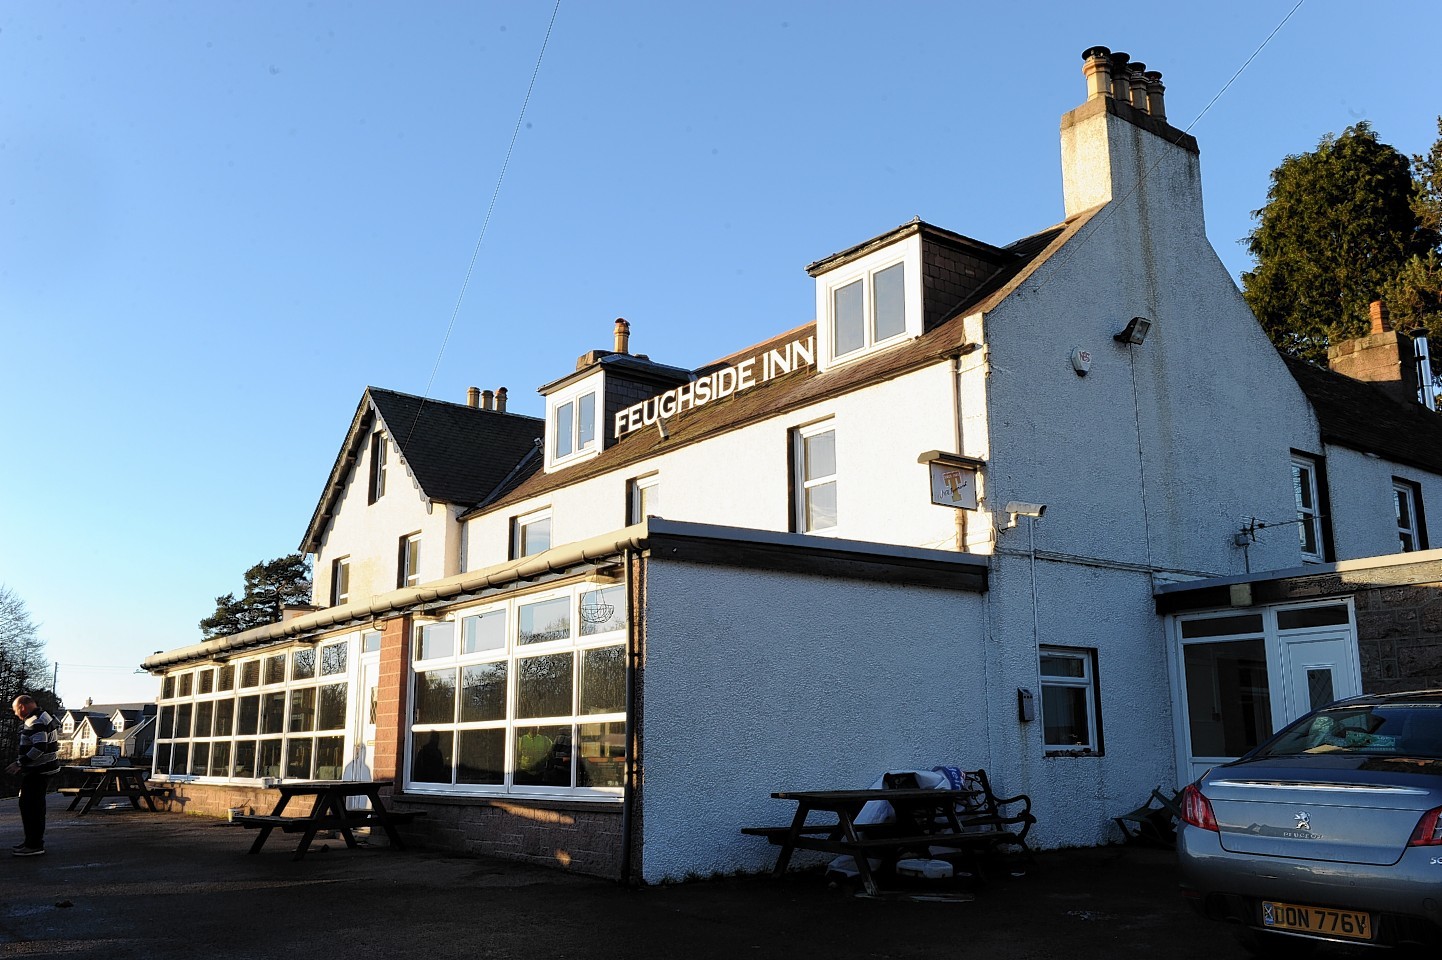 The Feughside Inn